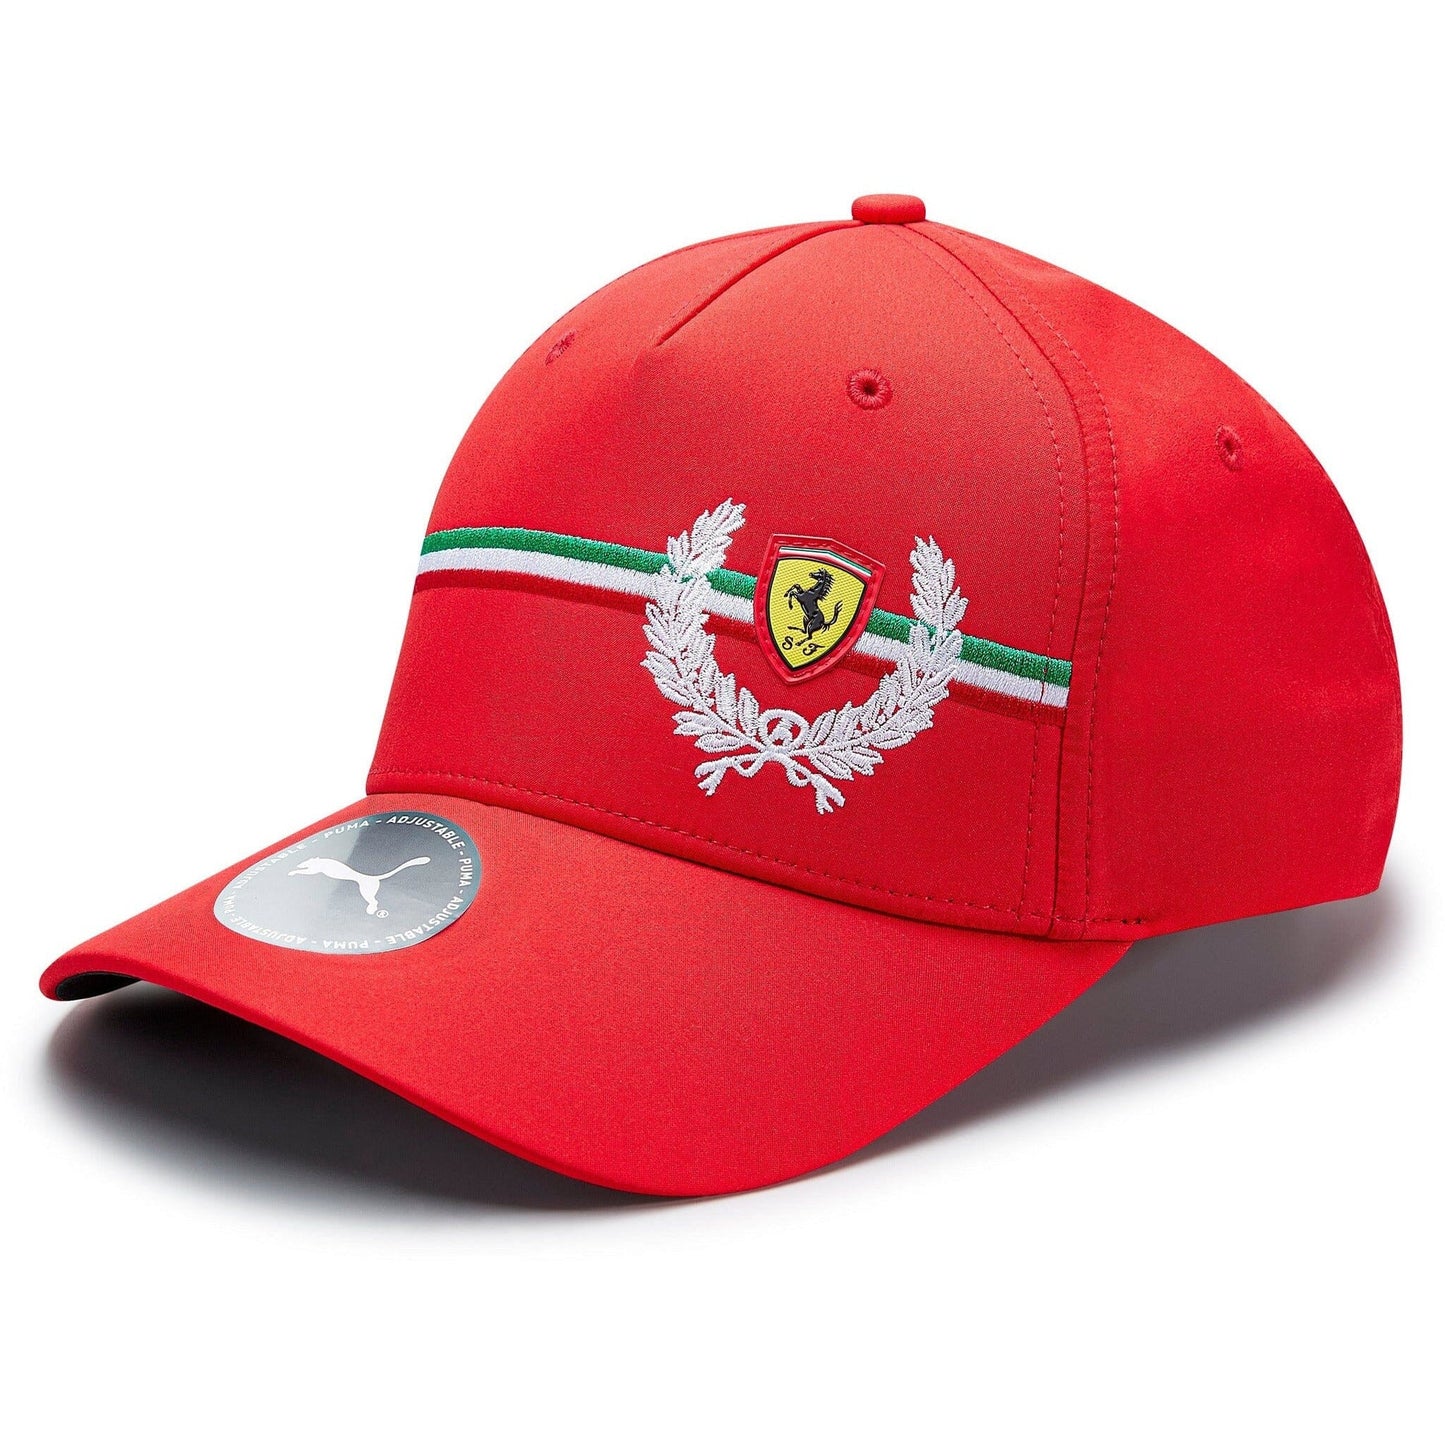 Scuderia Ferrari Puma Italian Heritage Hat - Red